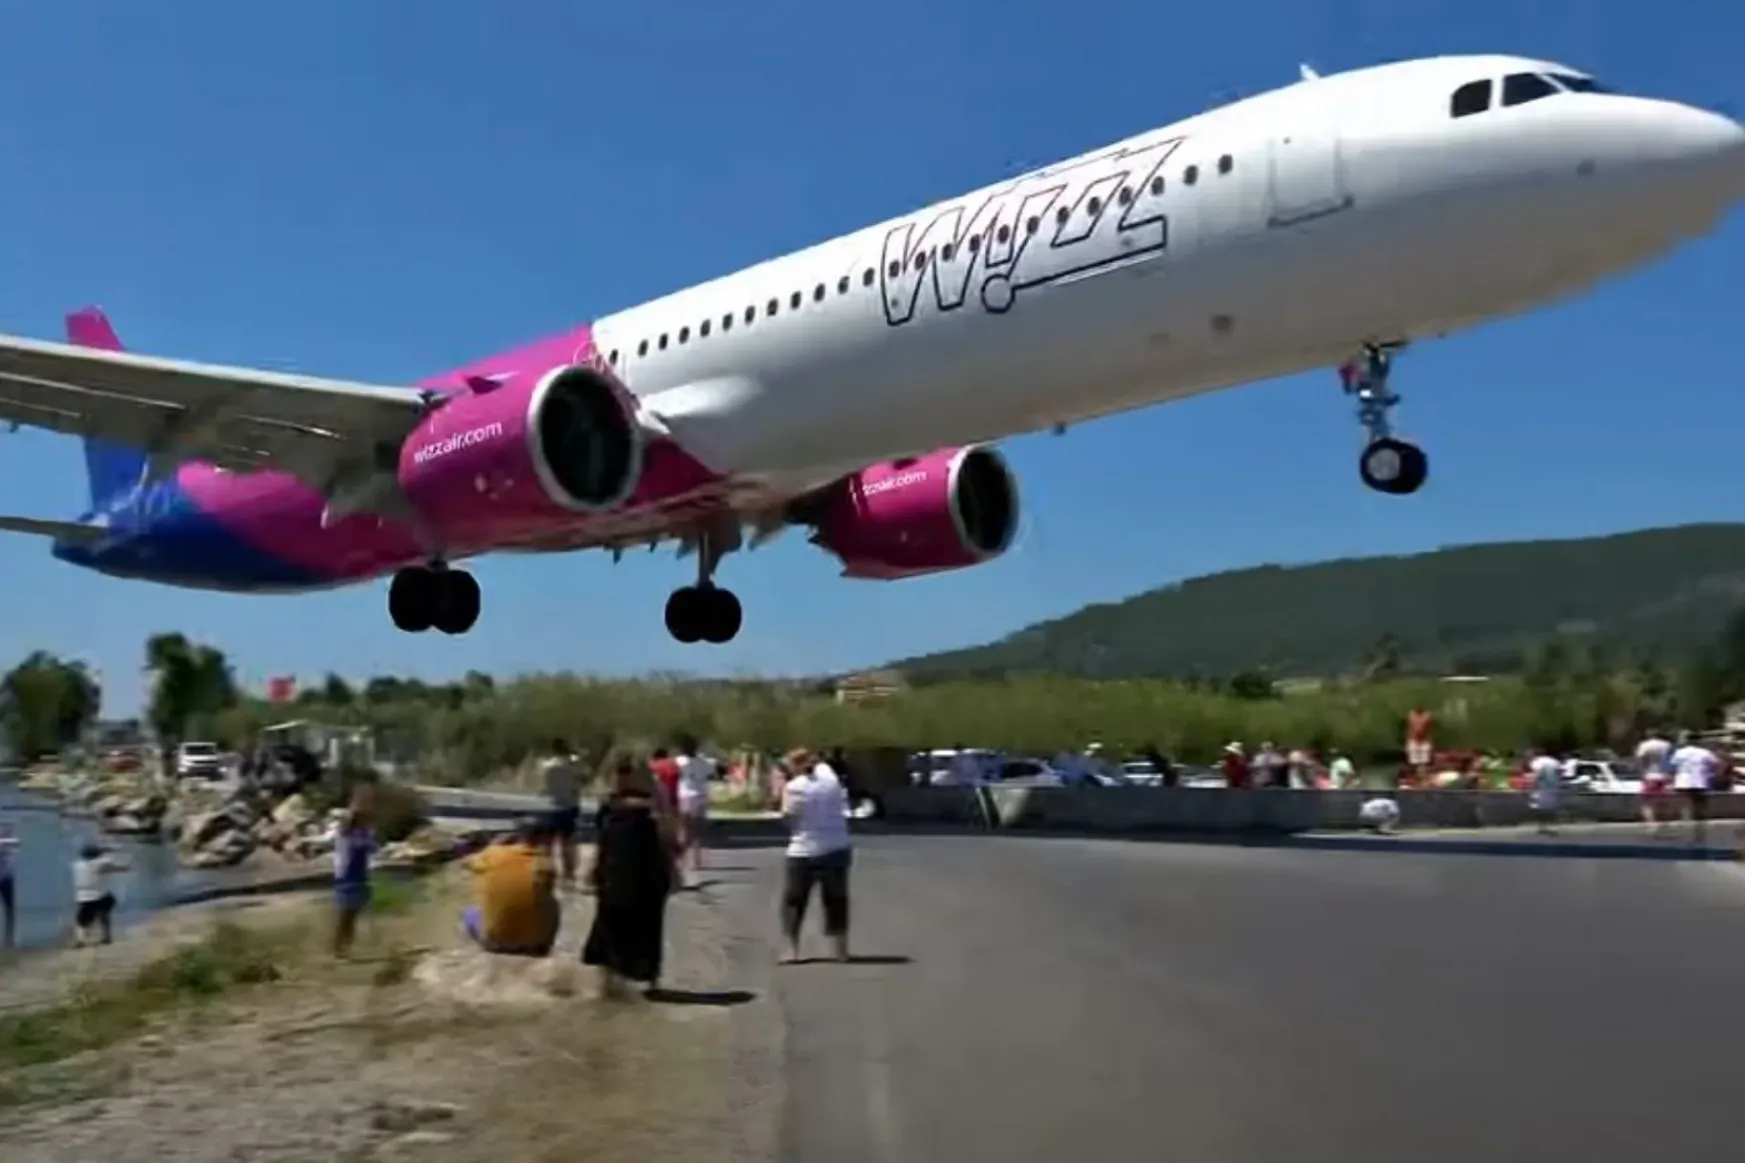 Belső vizsgálat indult az alacsonyan landoló Wizz Air-gép ügyében